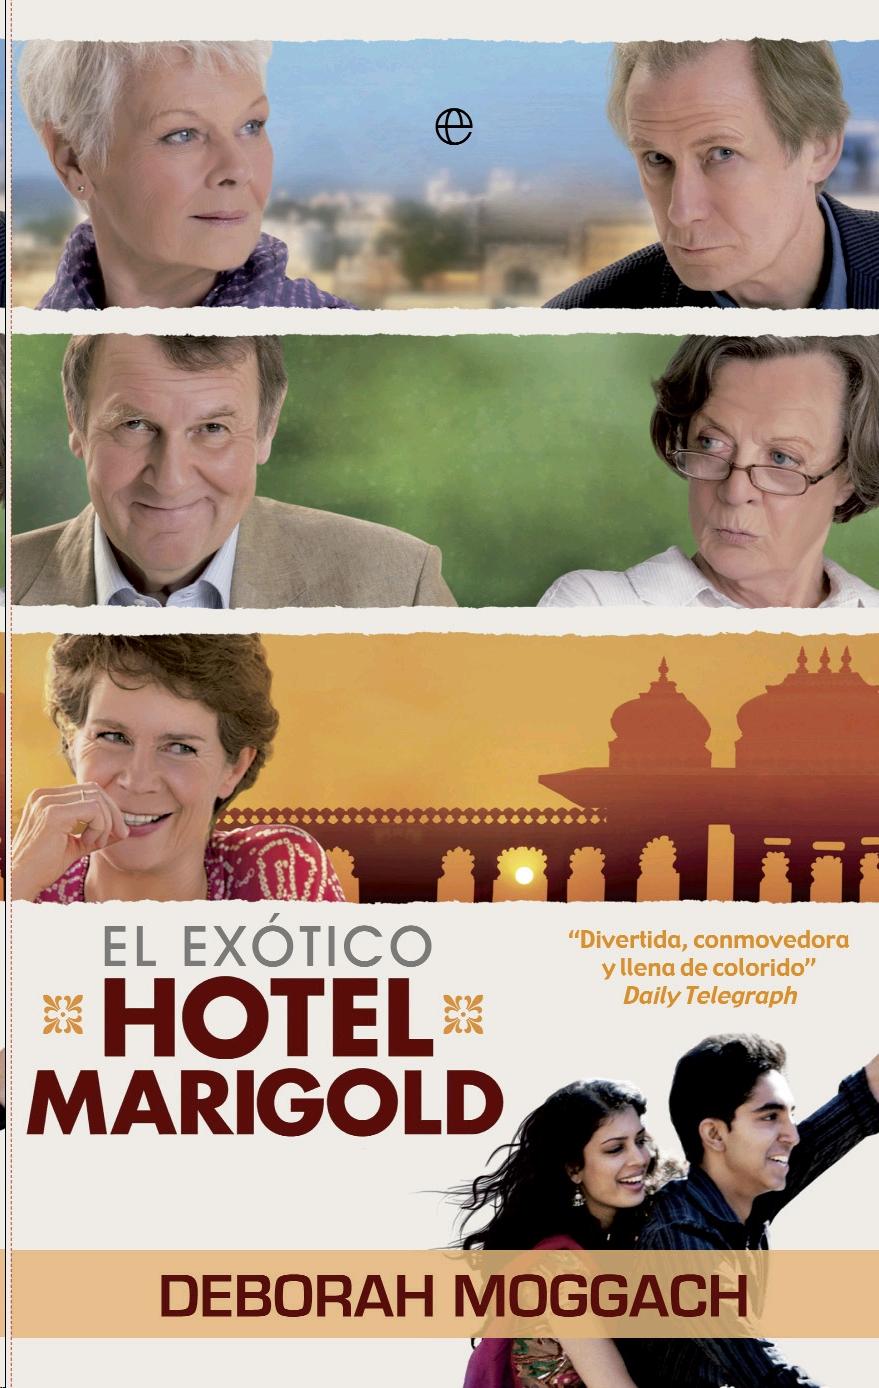 Exotico Hotel Marigold, El. 